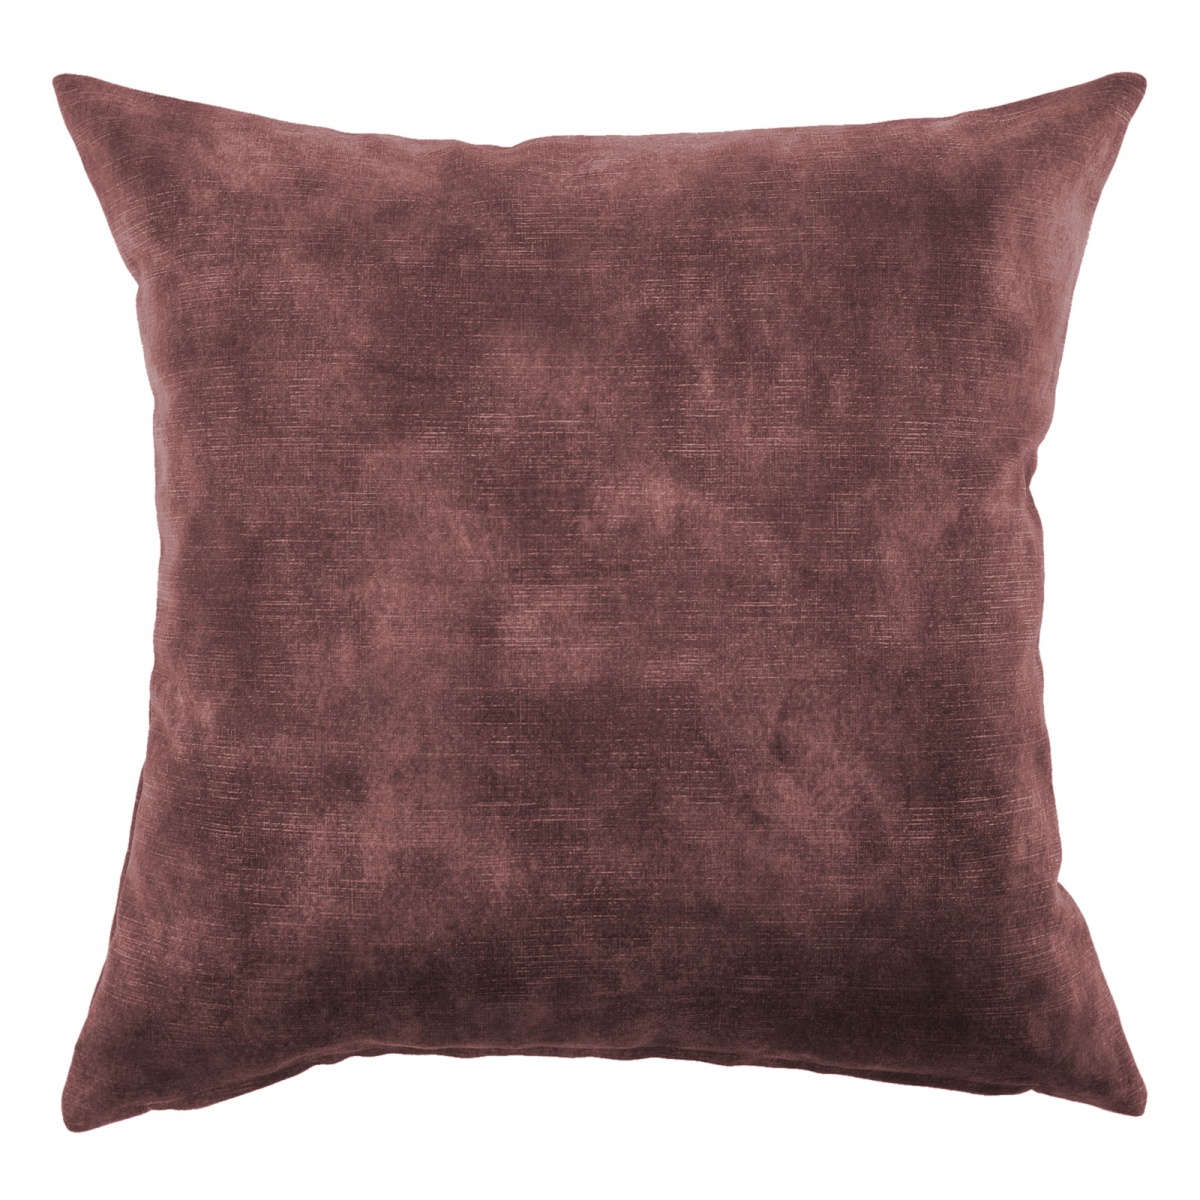 Lovely Oxblood Velvet Cushion - 50x50cm